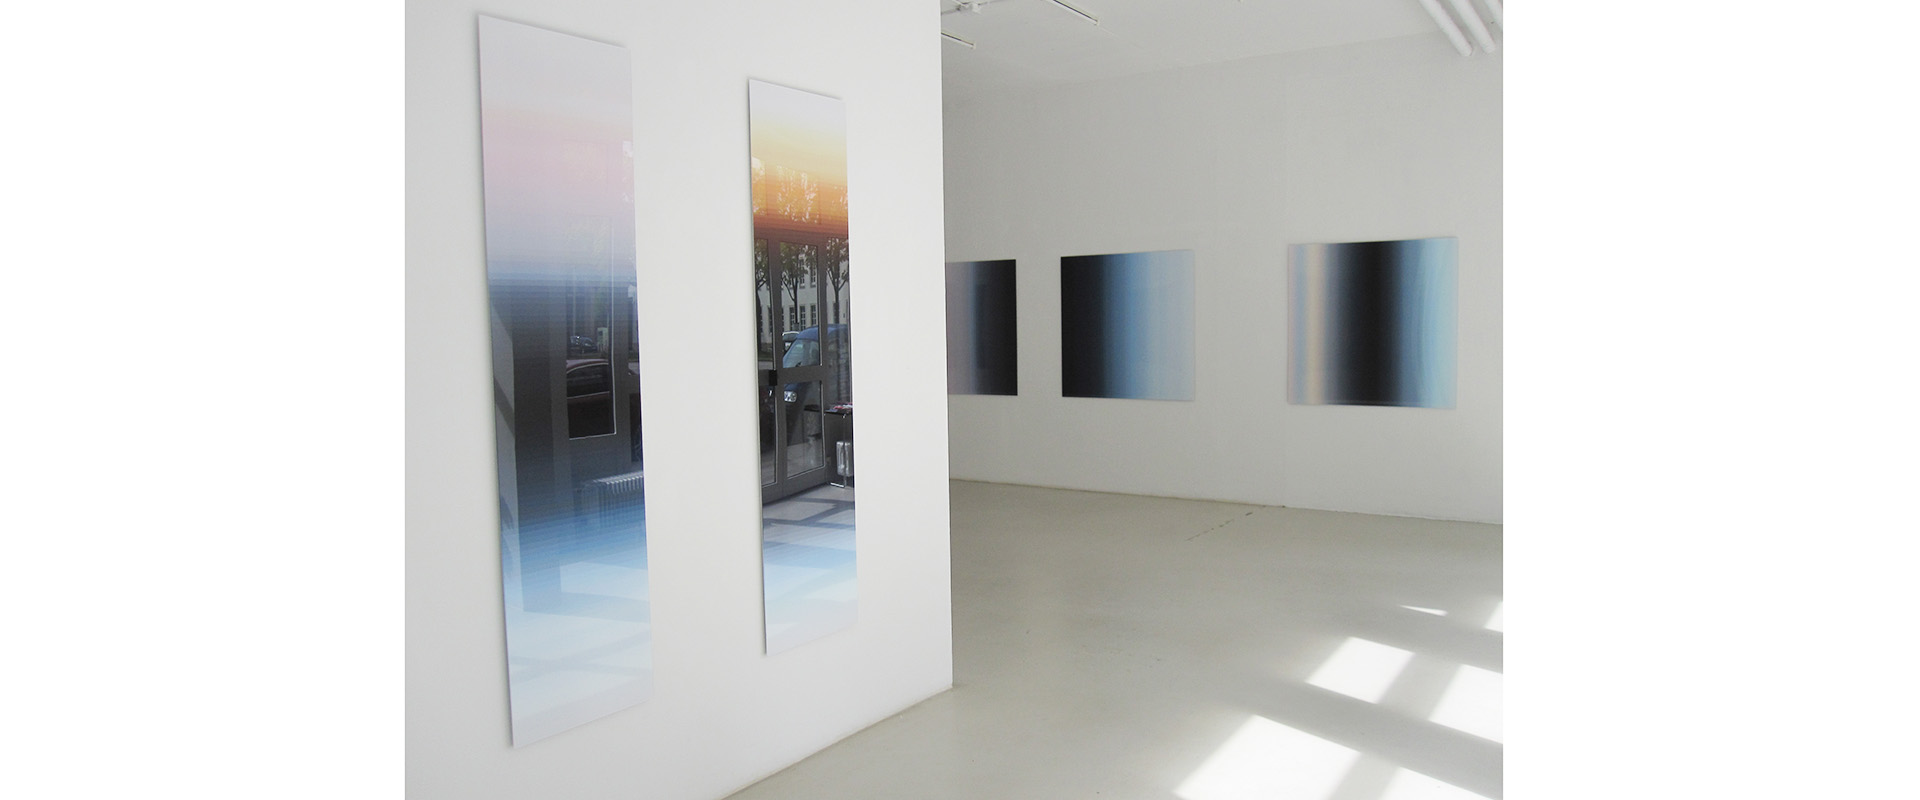 Ausstellungsansicht "sommer licht weiss. Inge Dick", Galerie Renate Bender, 2014